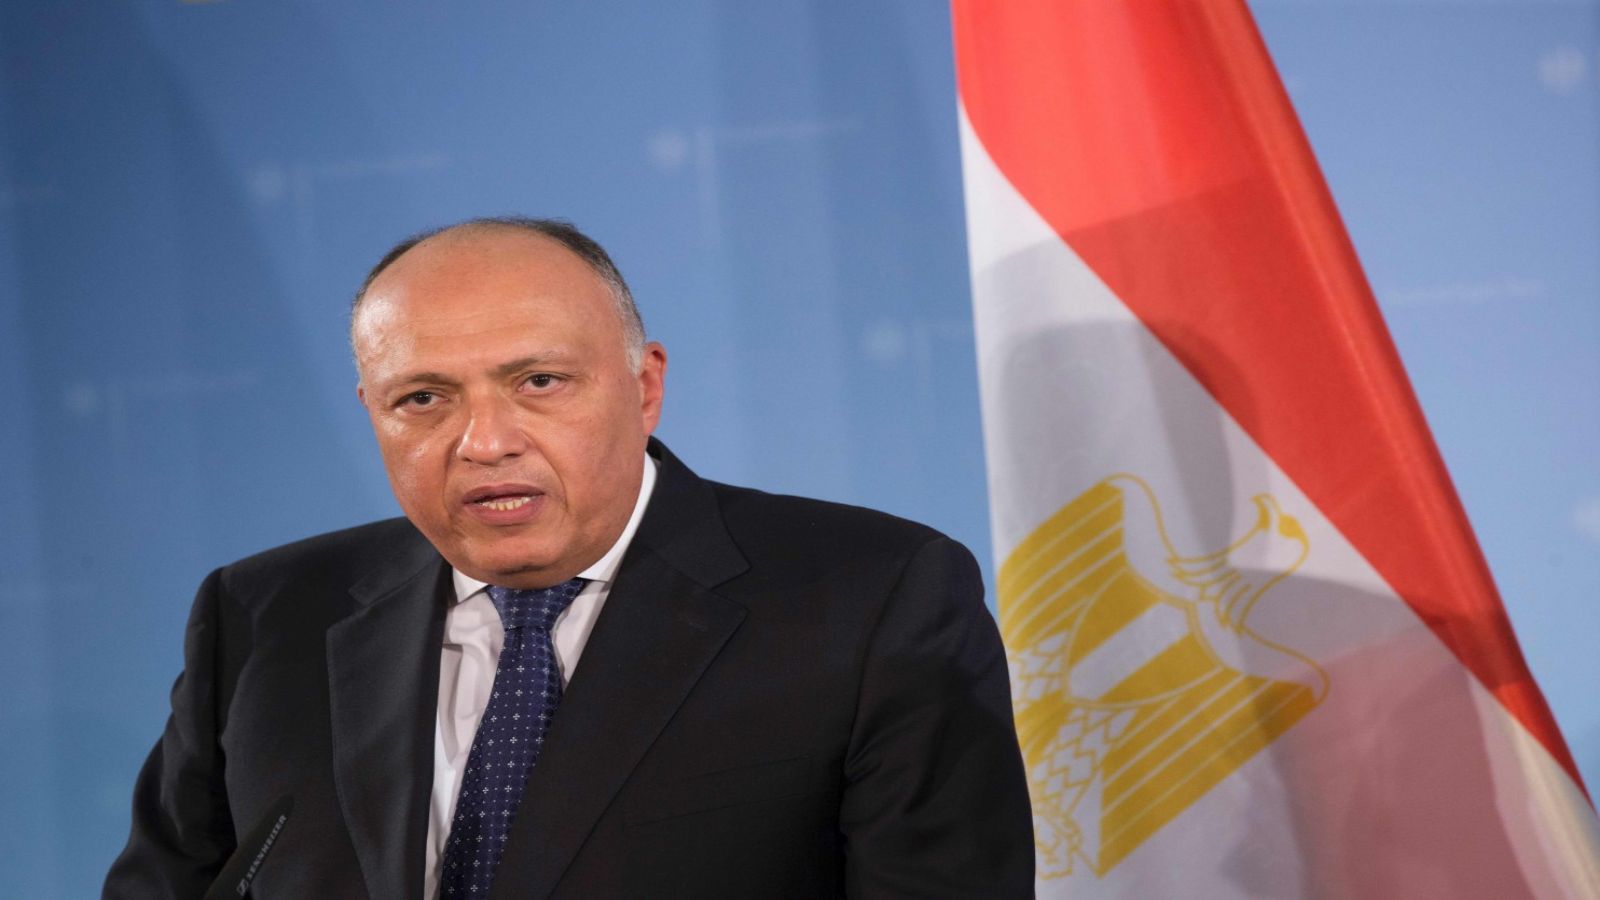 Թուրք-եգիպտական հարաբերությունները կվերականգնվեն մի պայմանով